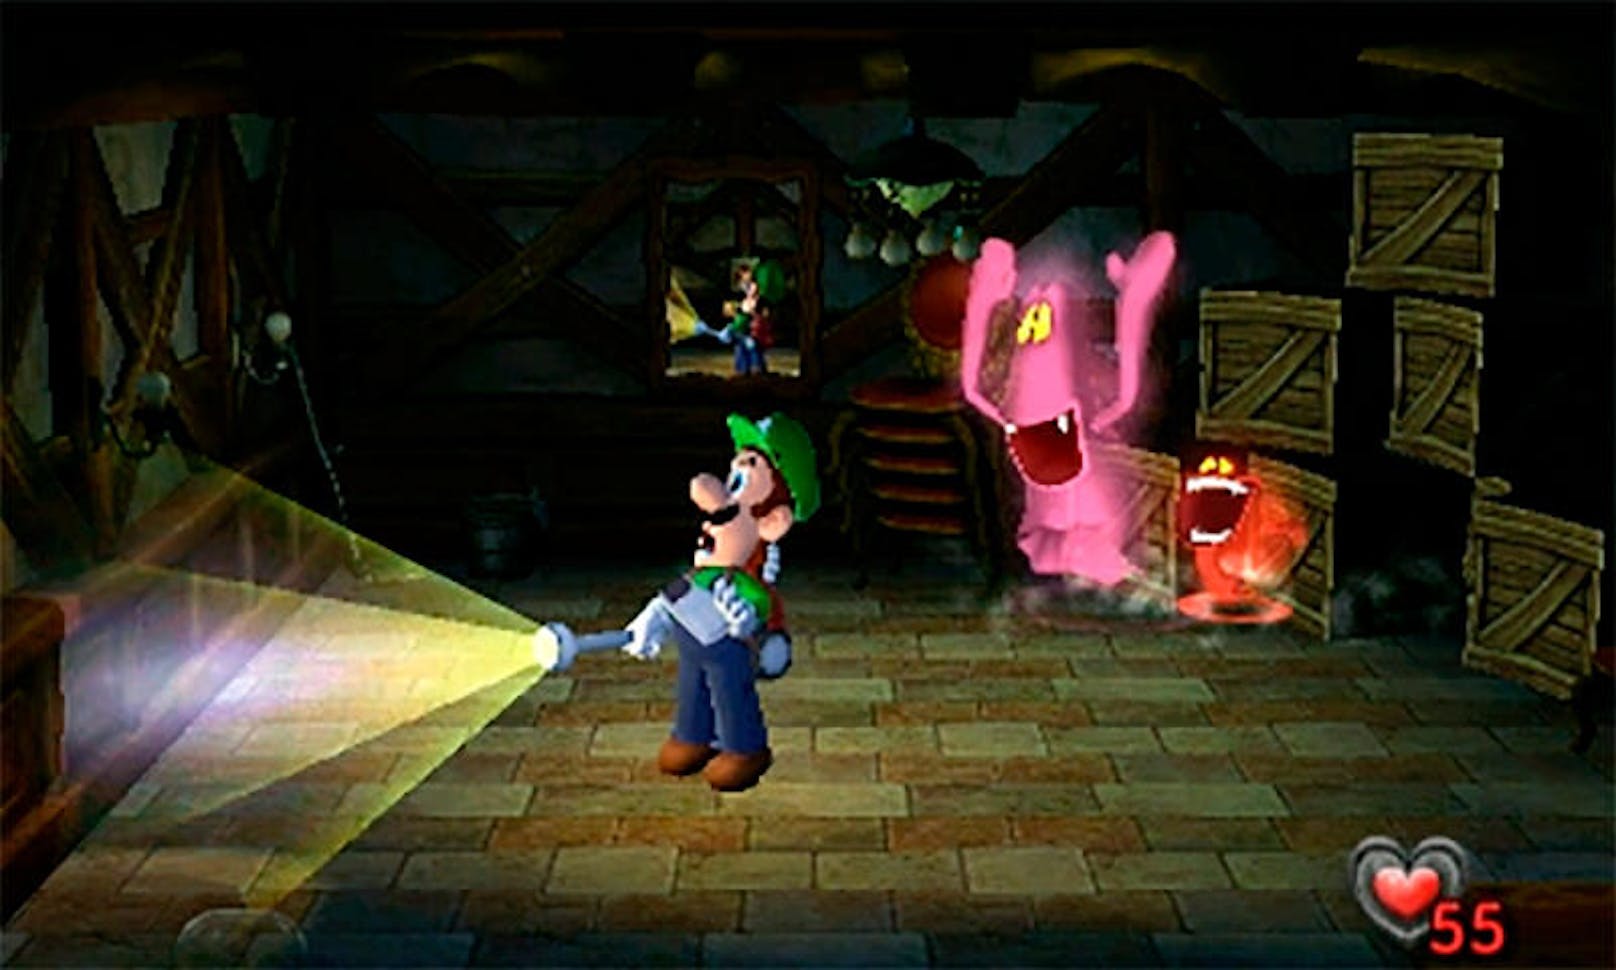 Der 3DS ist noch lange nicht tot! Nintendo hält den Handheld hartnäckig am Leben - und dazu tragen natürlich auch Portierungen toller Games bei, die schon einige Jahre auf dem Buckel haben. Luigis Mansion ist hervorragend gealtert und auch unterwegs noch für einen kleinen Schauer gut. Es macht enormen Spaß, die Diorama-Räume der Geistervilla mit einem herrlich ängstlichen Luigi zu erkunden.